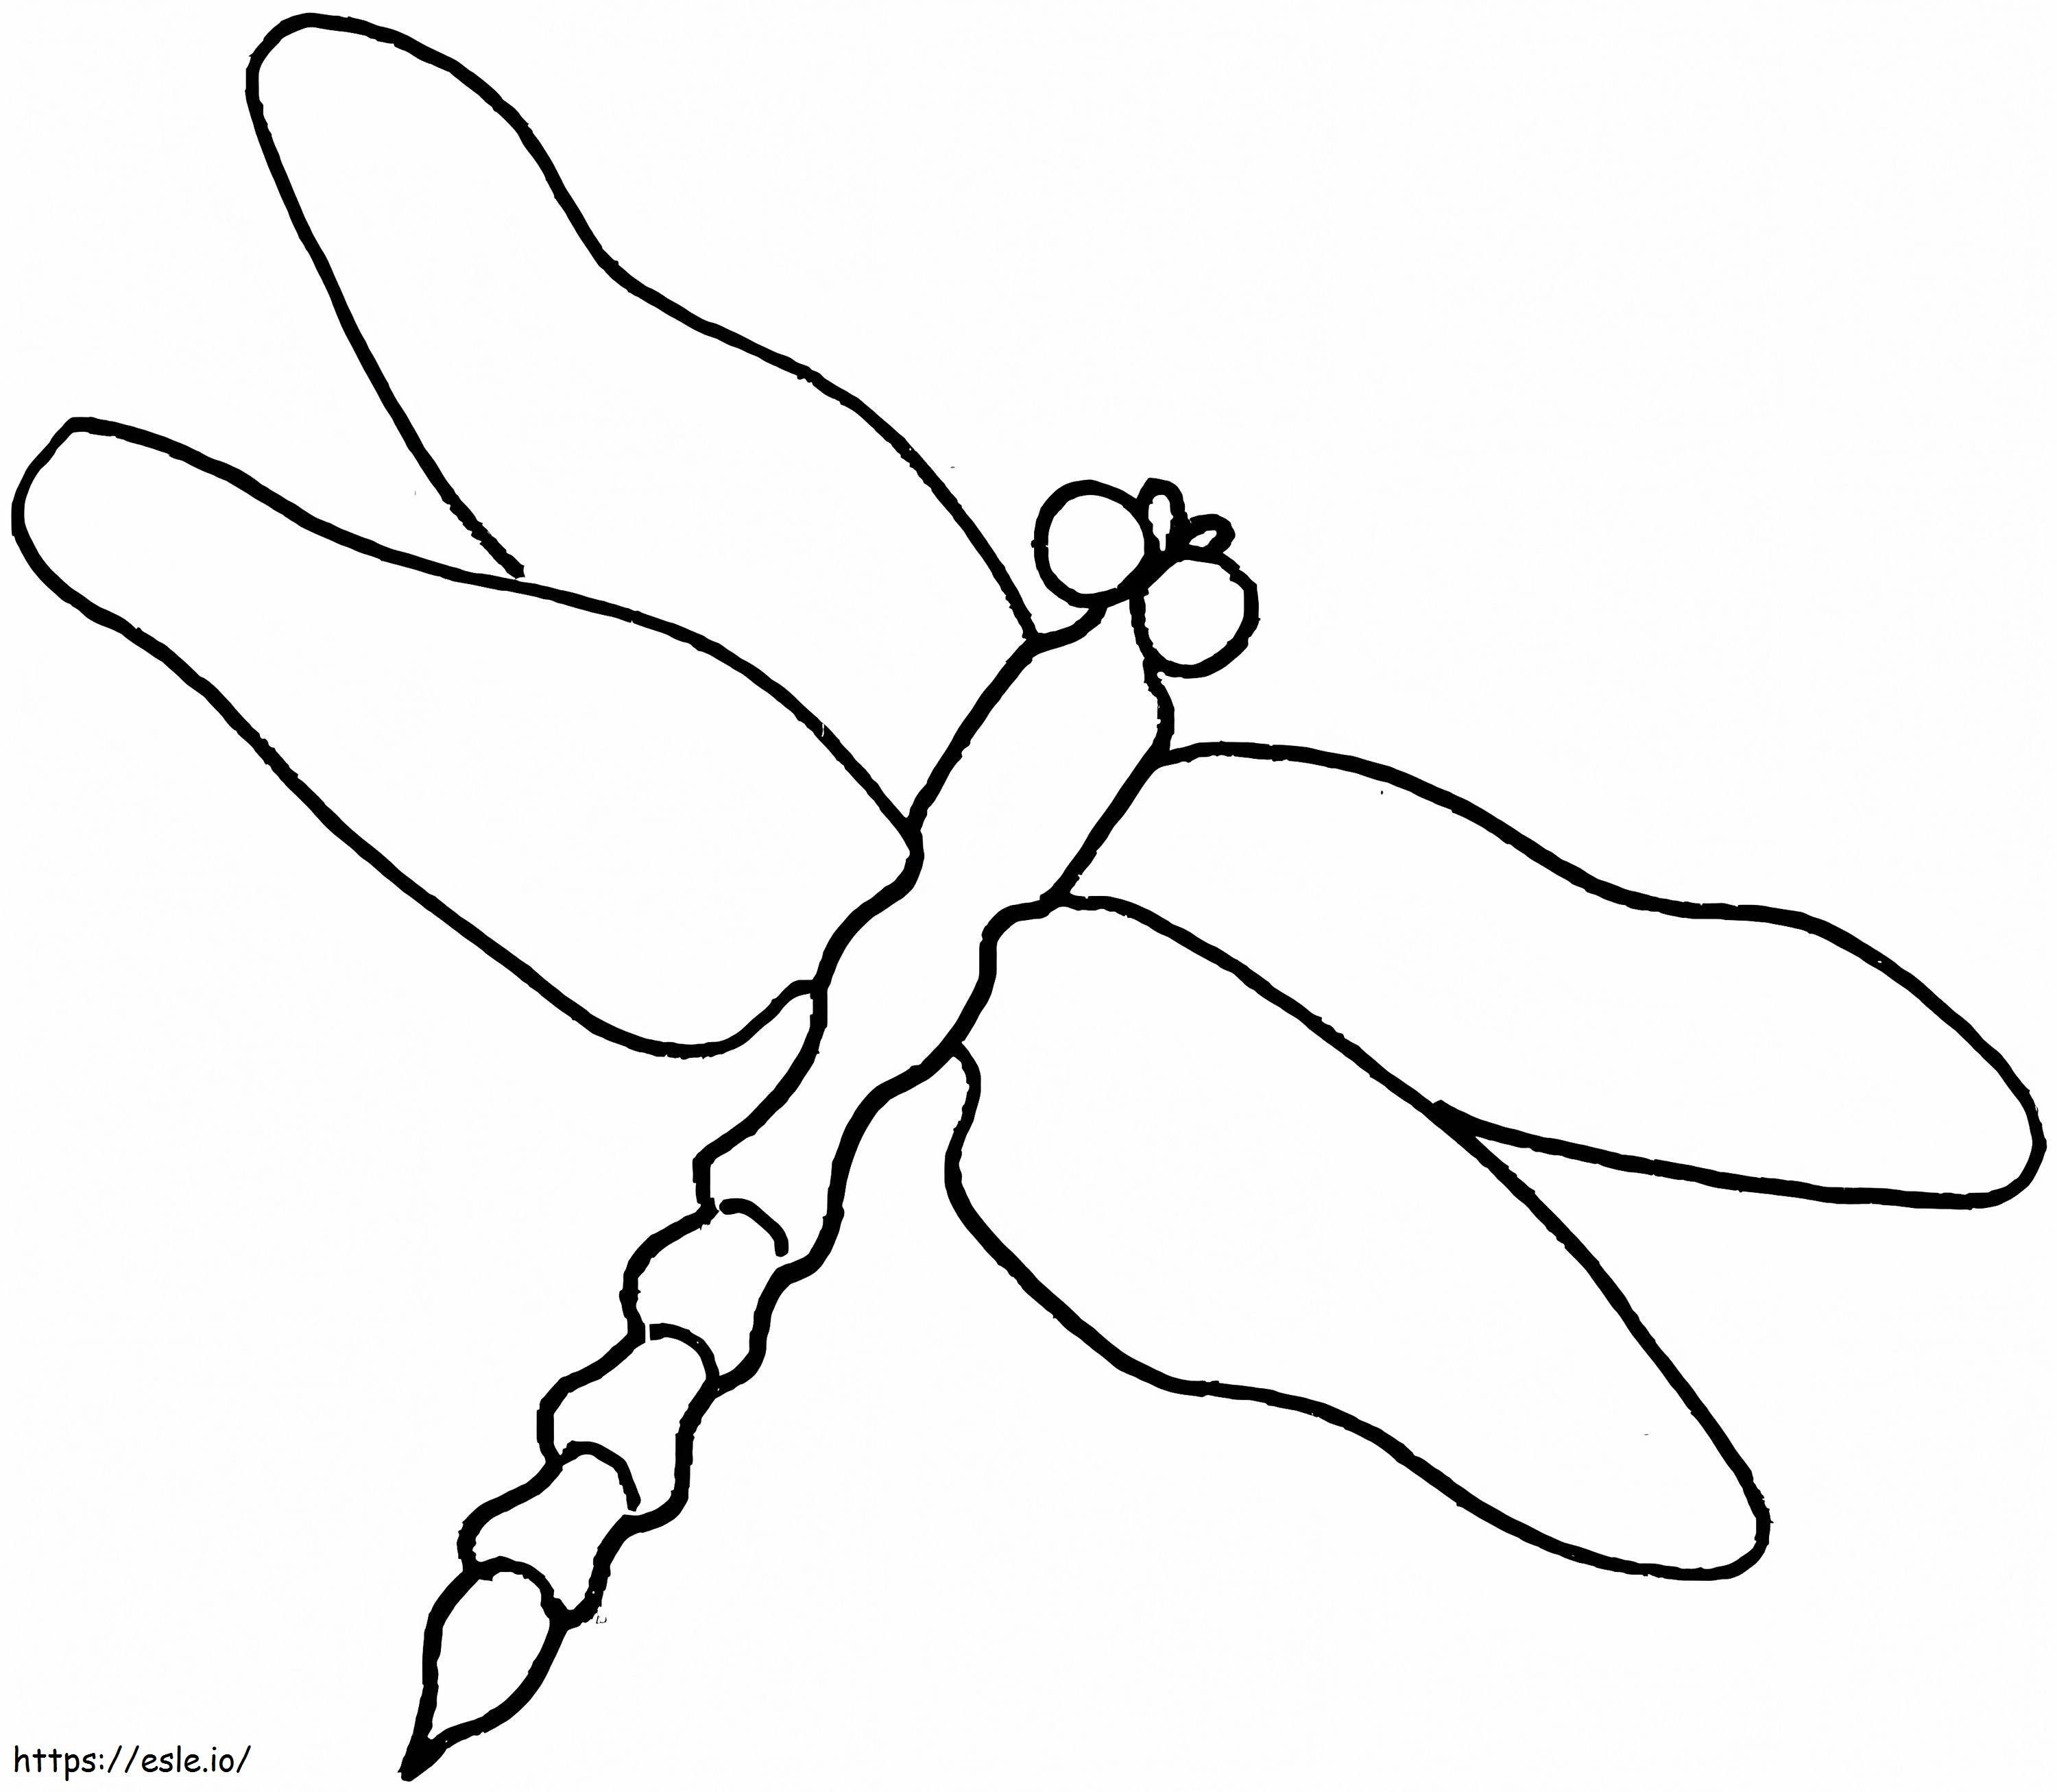 Libelle Lineart ausmalbilder